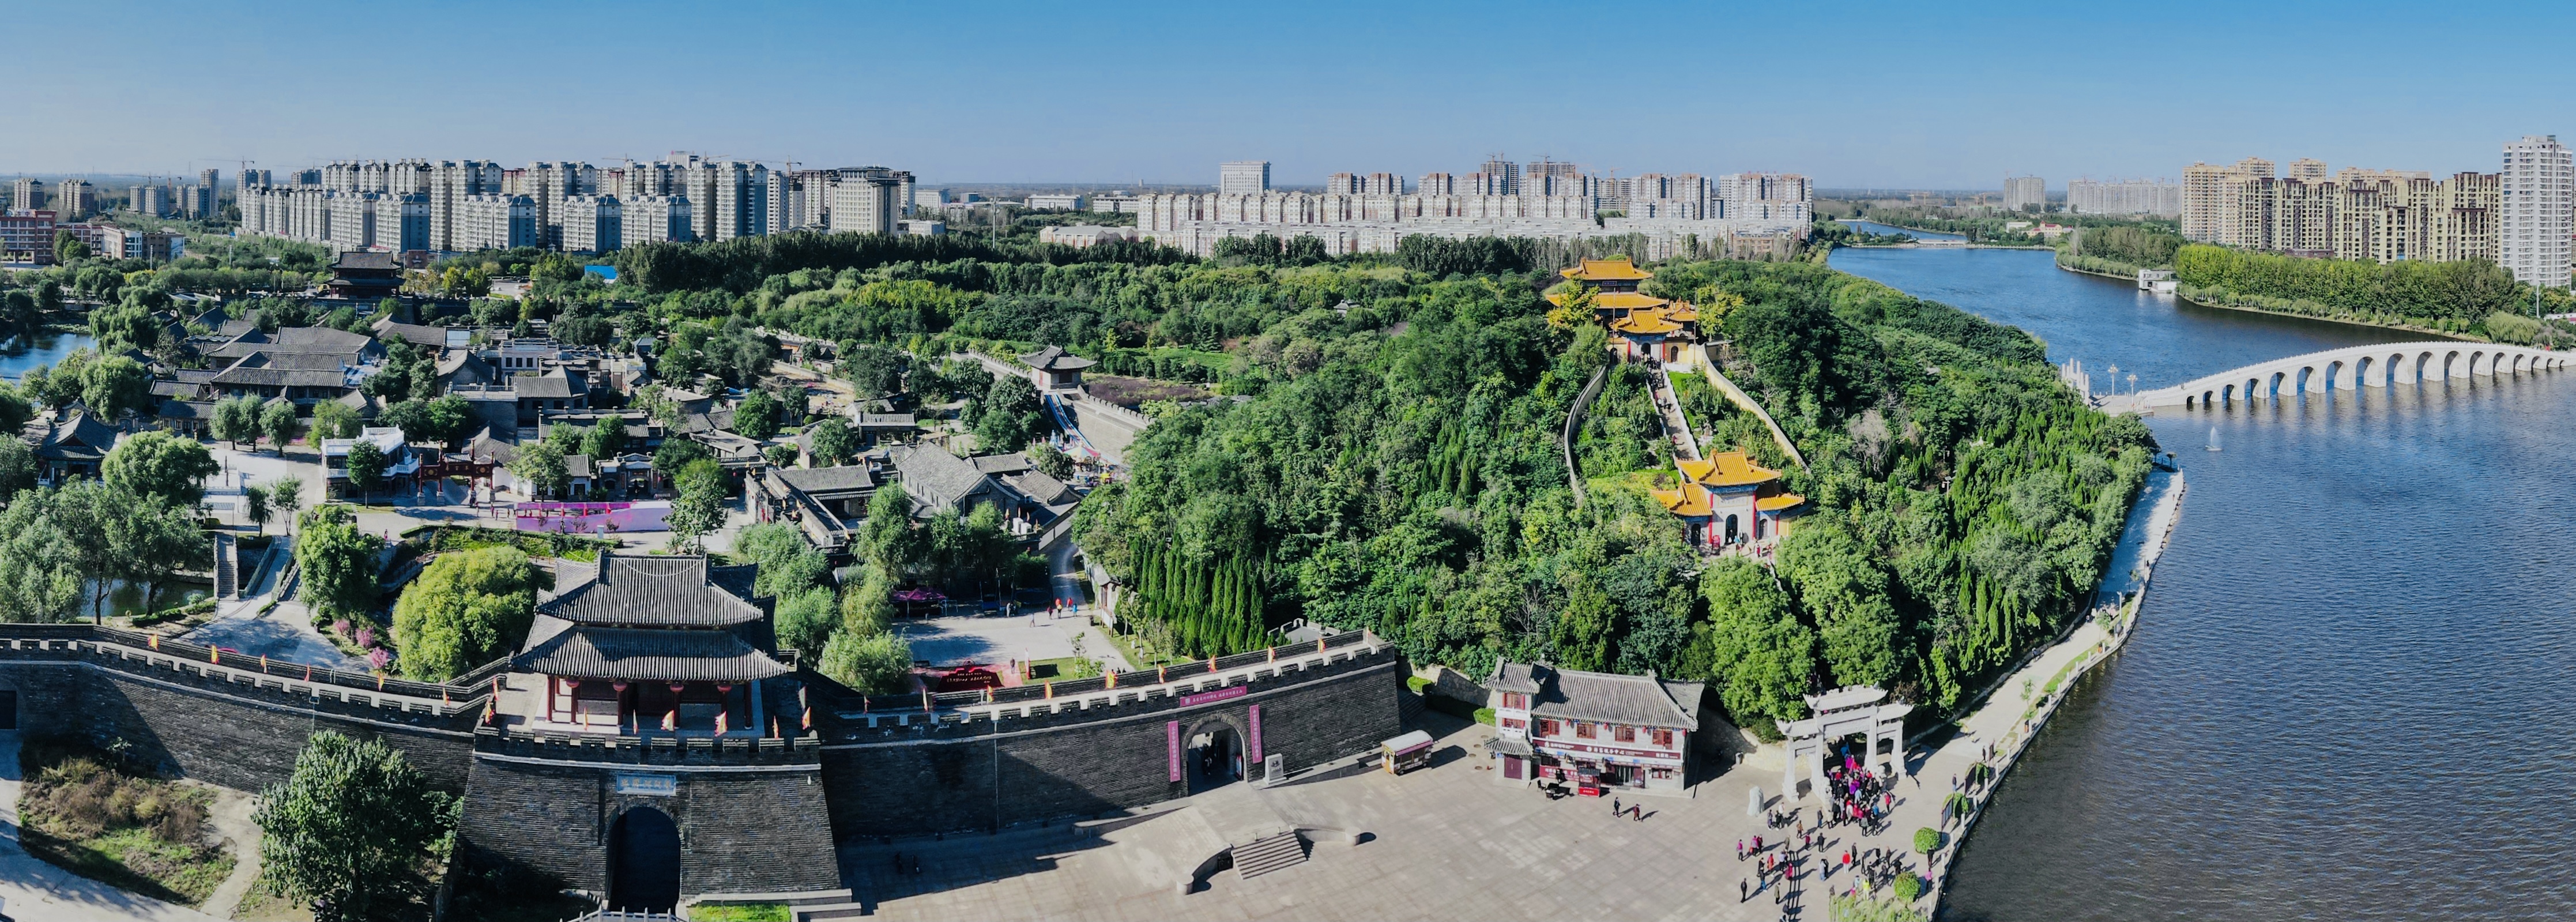 15日,京津冀晋鲁豫重点自驾旅行商和新闻媒体记者们还出席了聊城市